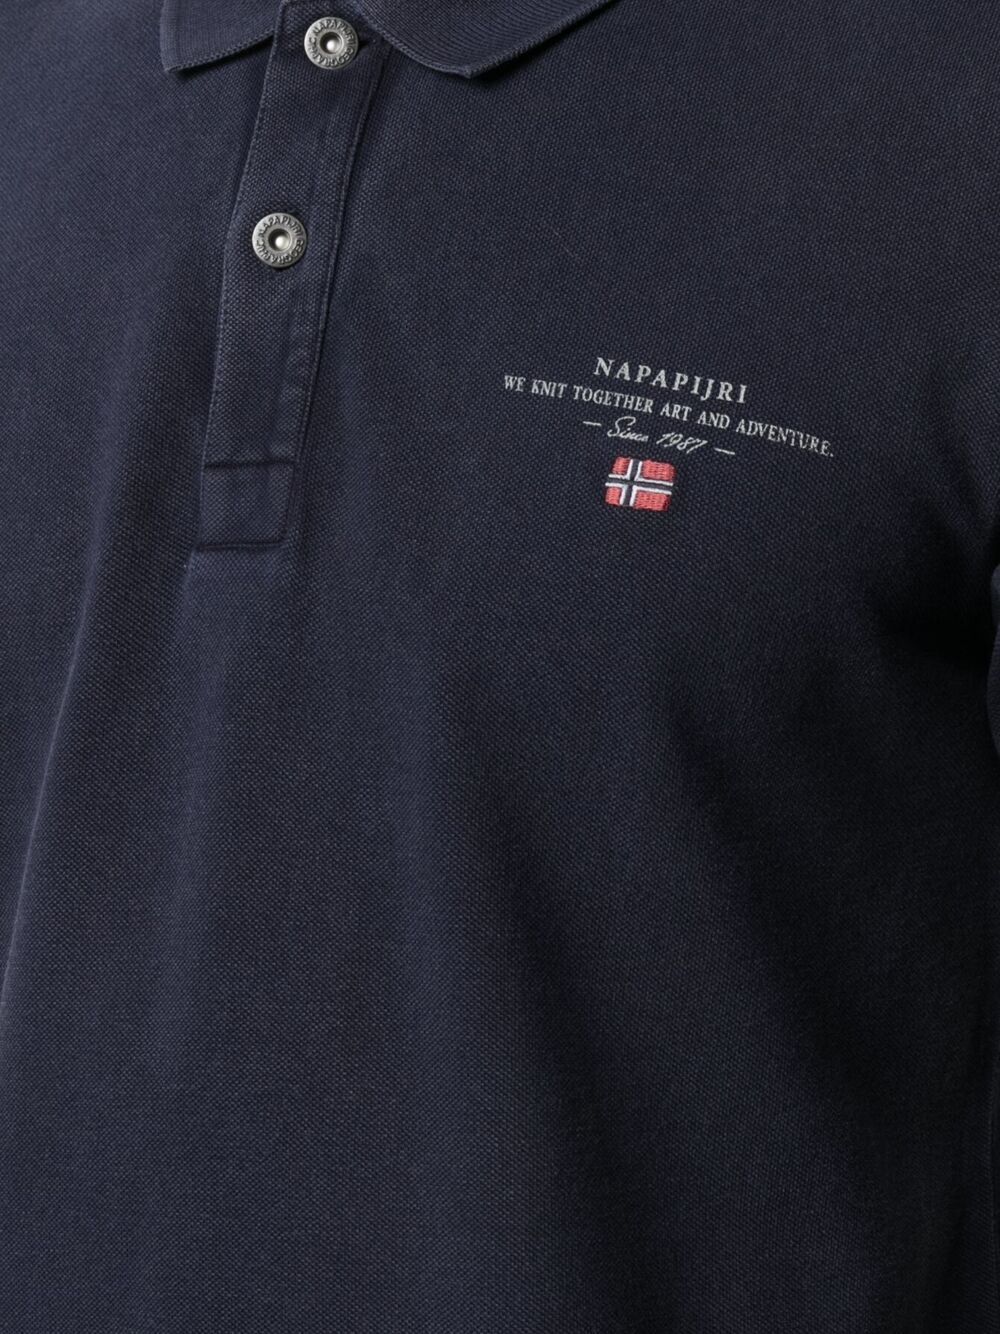 фото Napapijri рубашка поло с вышитым логотипом